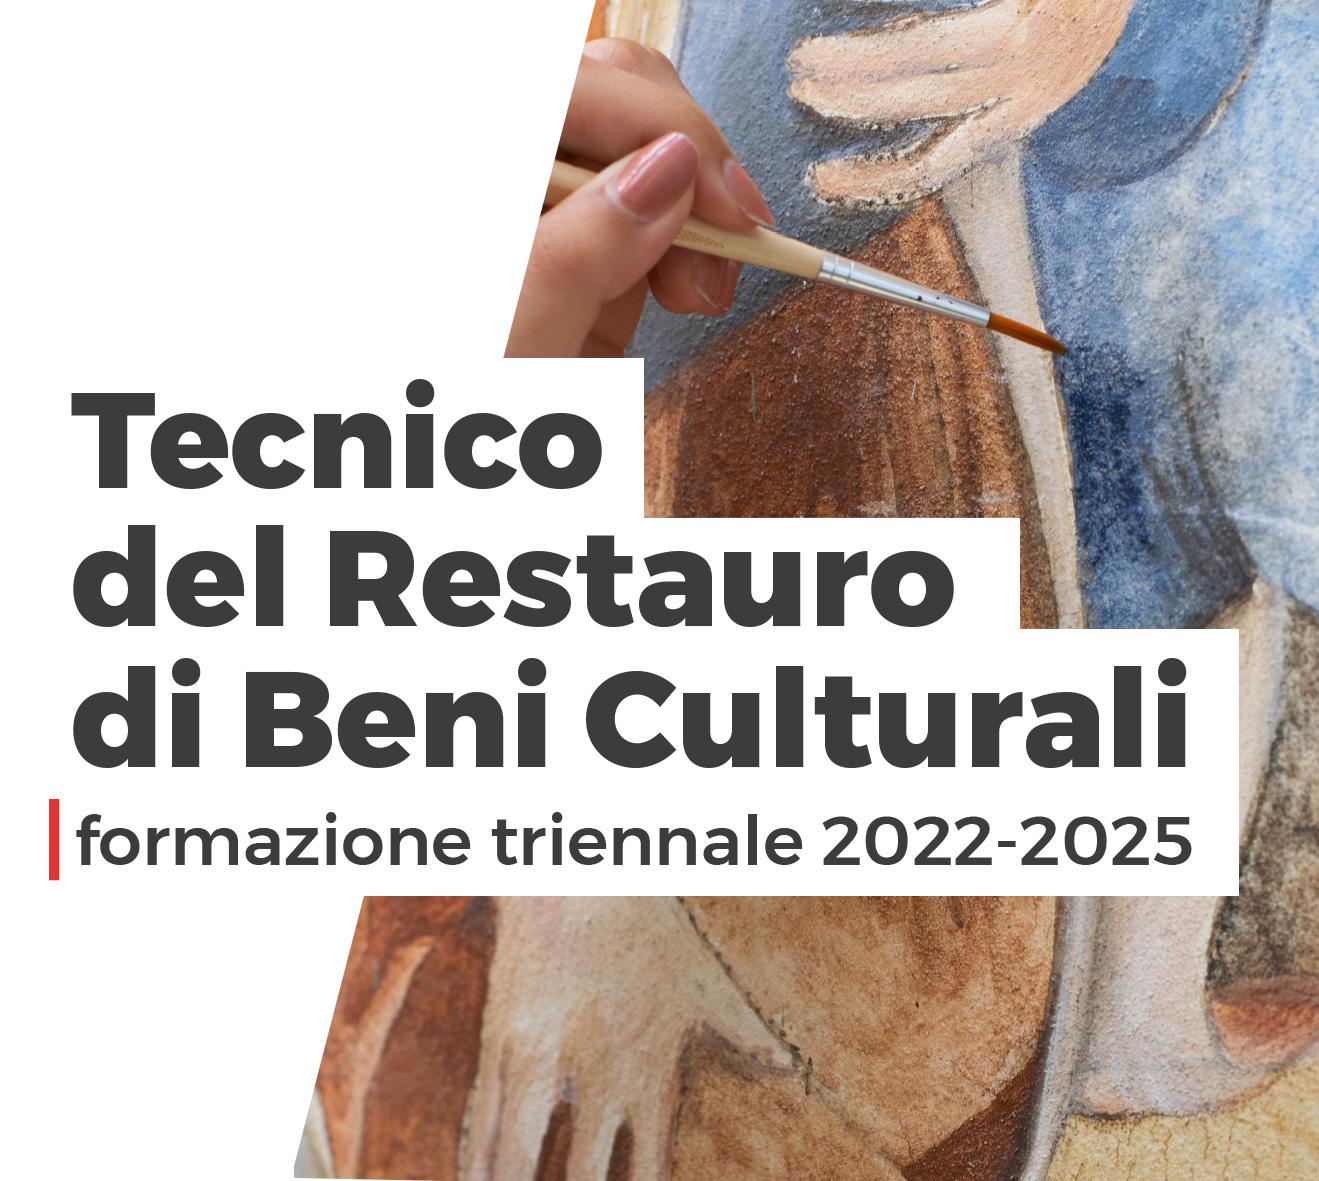 istituto salesiano san zeno verona corso triennale tecnico restauro beni culturali 2022